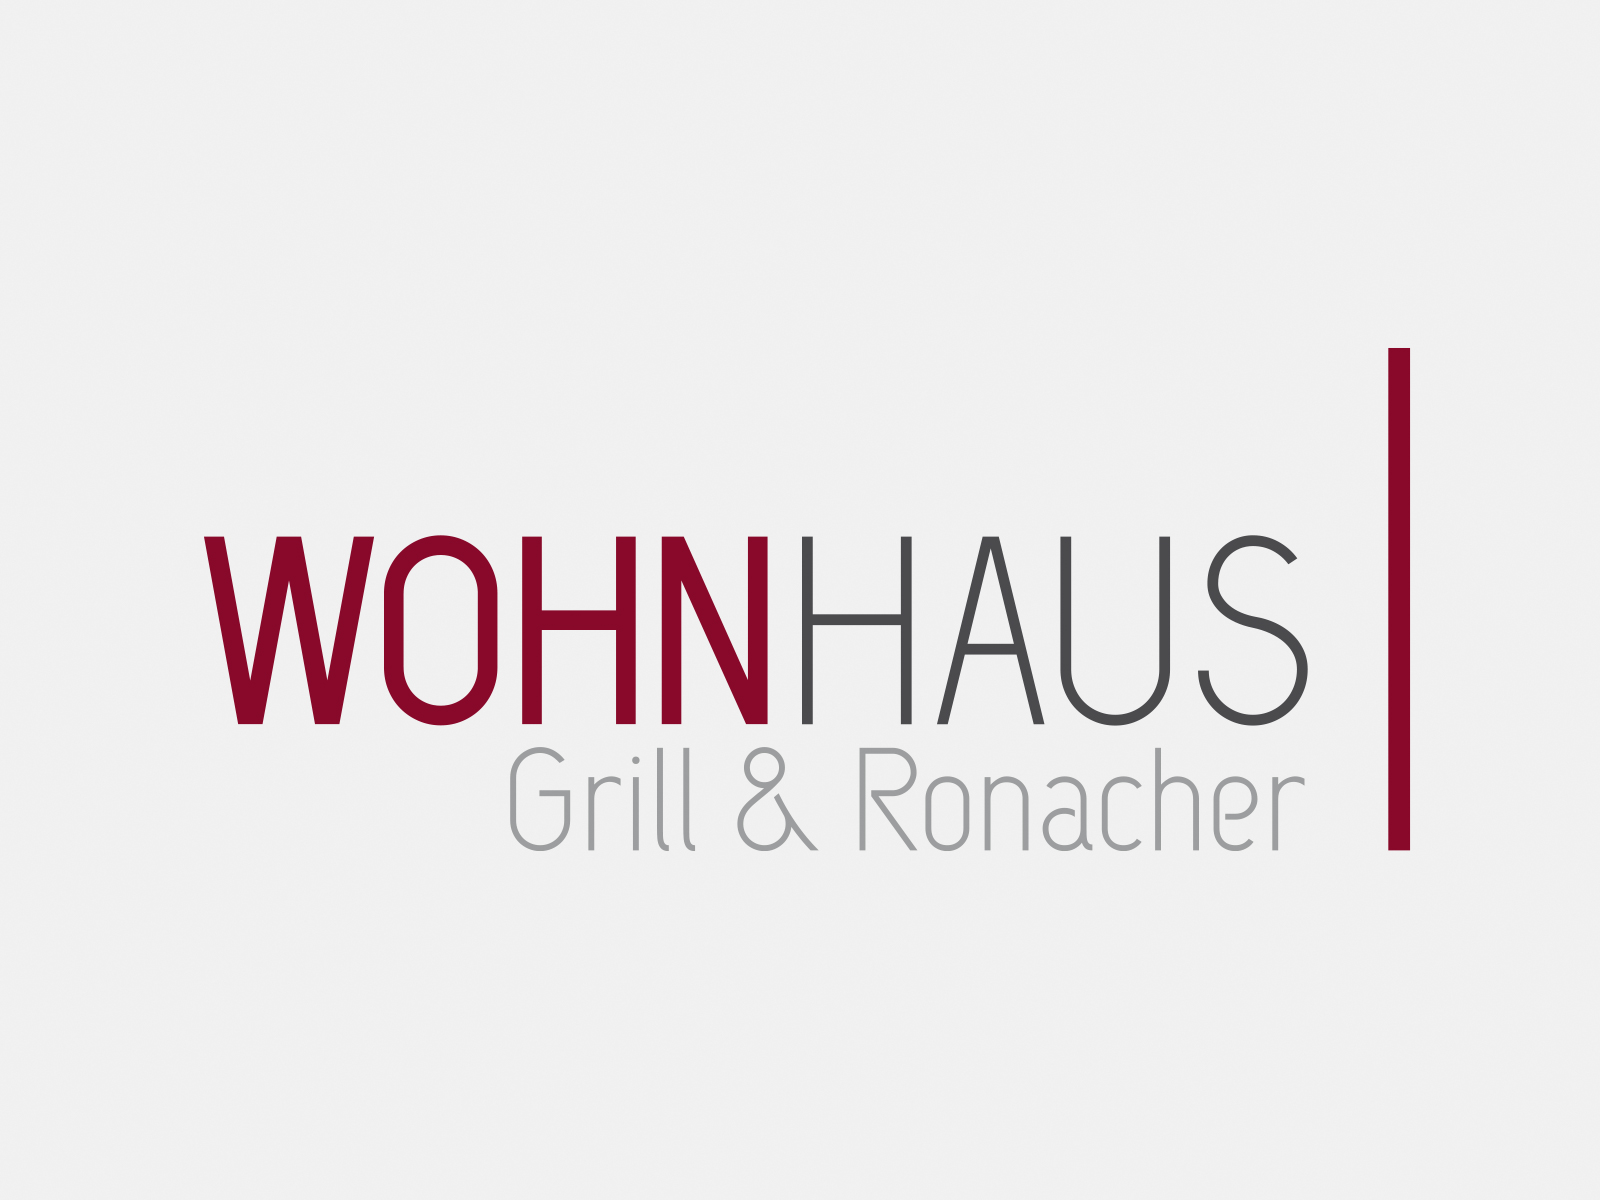 Logo WOHNHAUS Grill & Ronacher in Farbe auf grauem Hintergrund